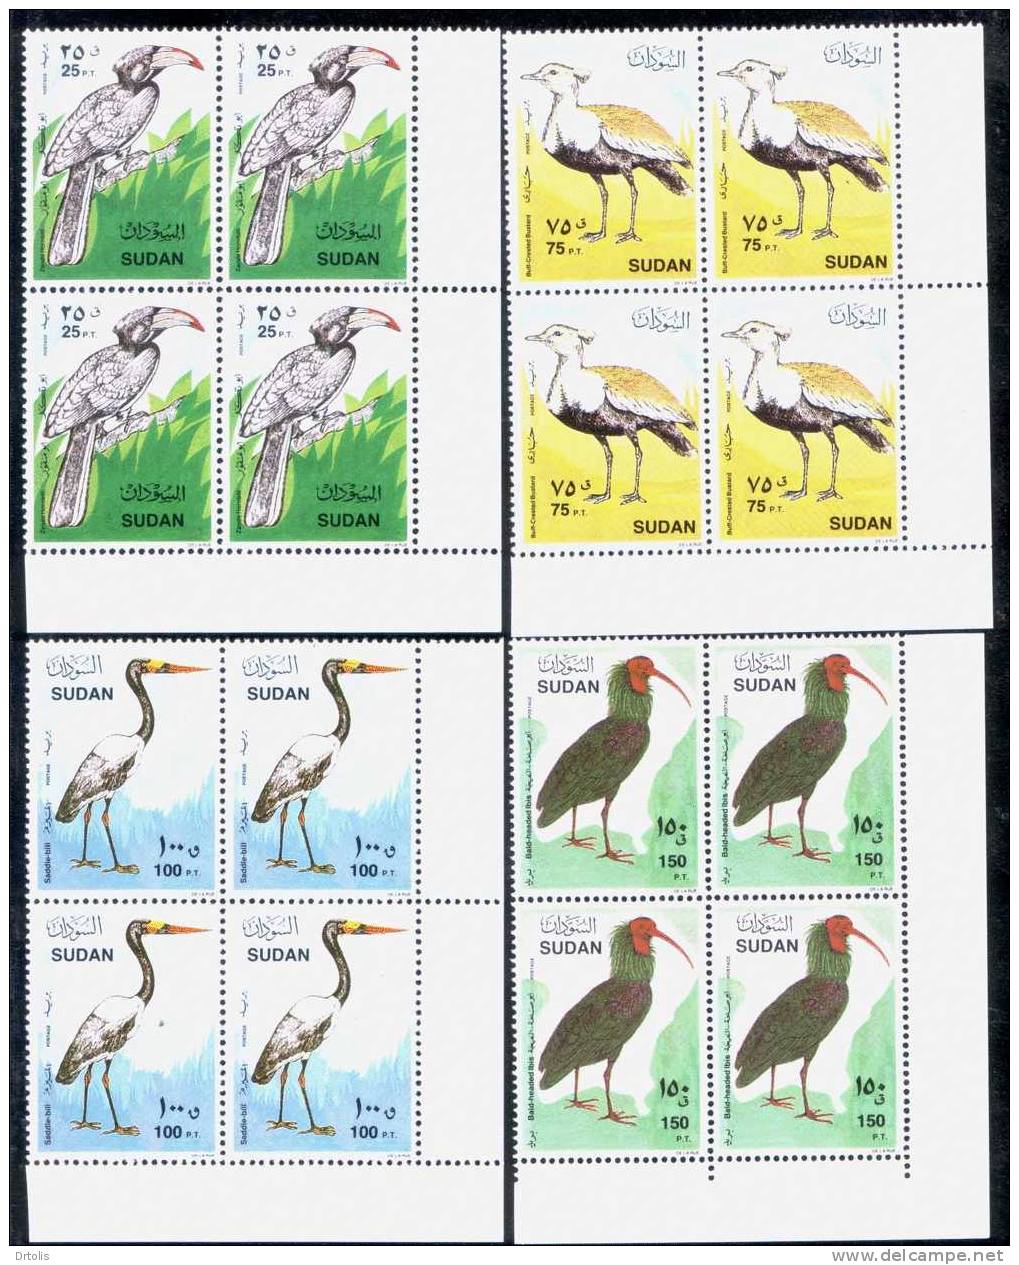 SUDAN 1990 / BIRDS / MNH / VF/ 5 SCANS. - Sudan (1954-...)